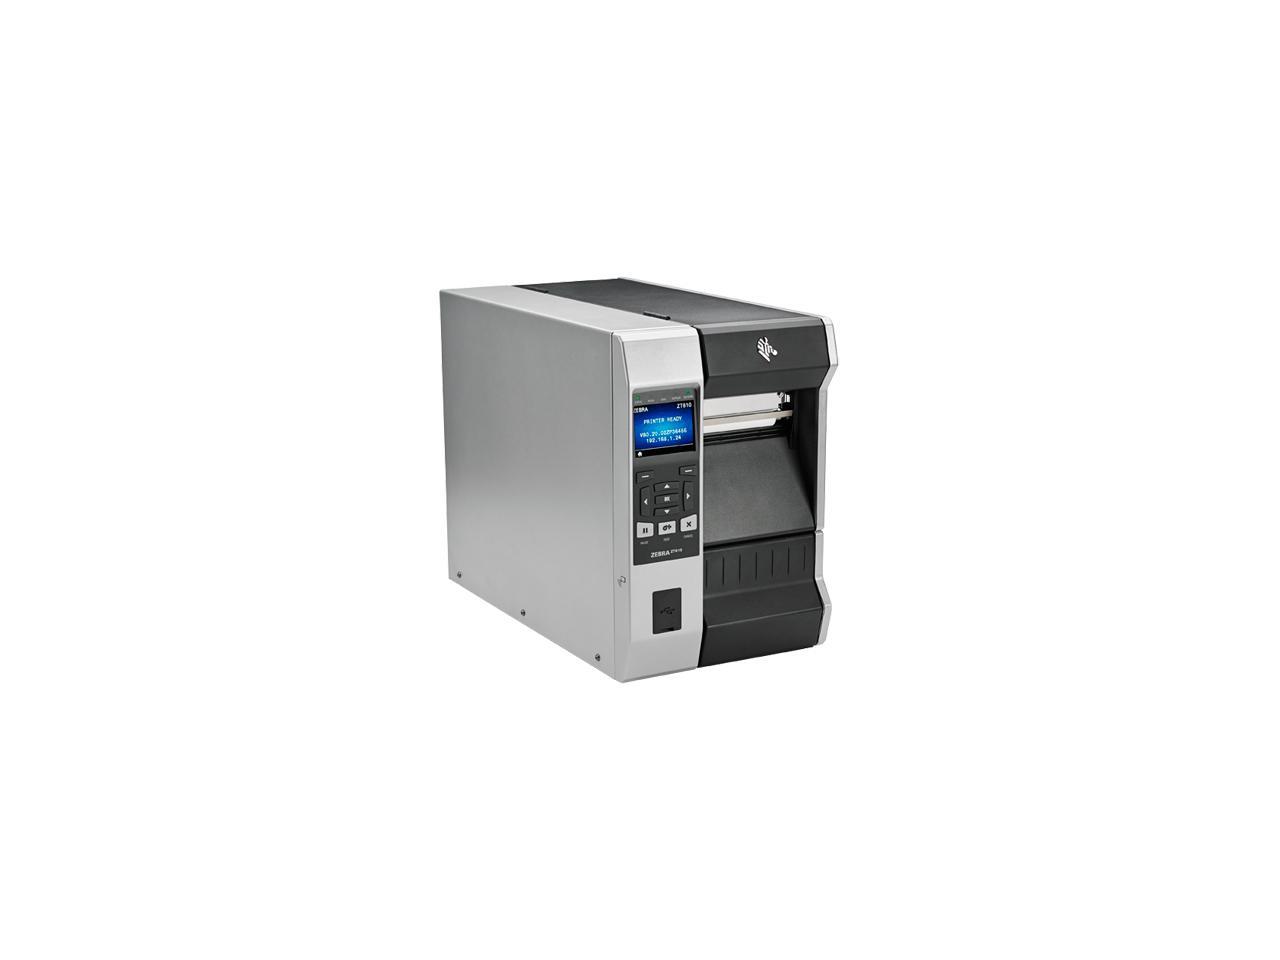 Zebra Zt610 4 Thermal Transfer Label Printer With Color Screen 300dpi Serial Usb Gigabit 6019